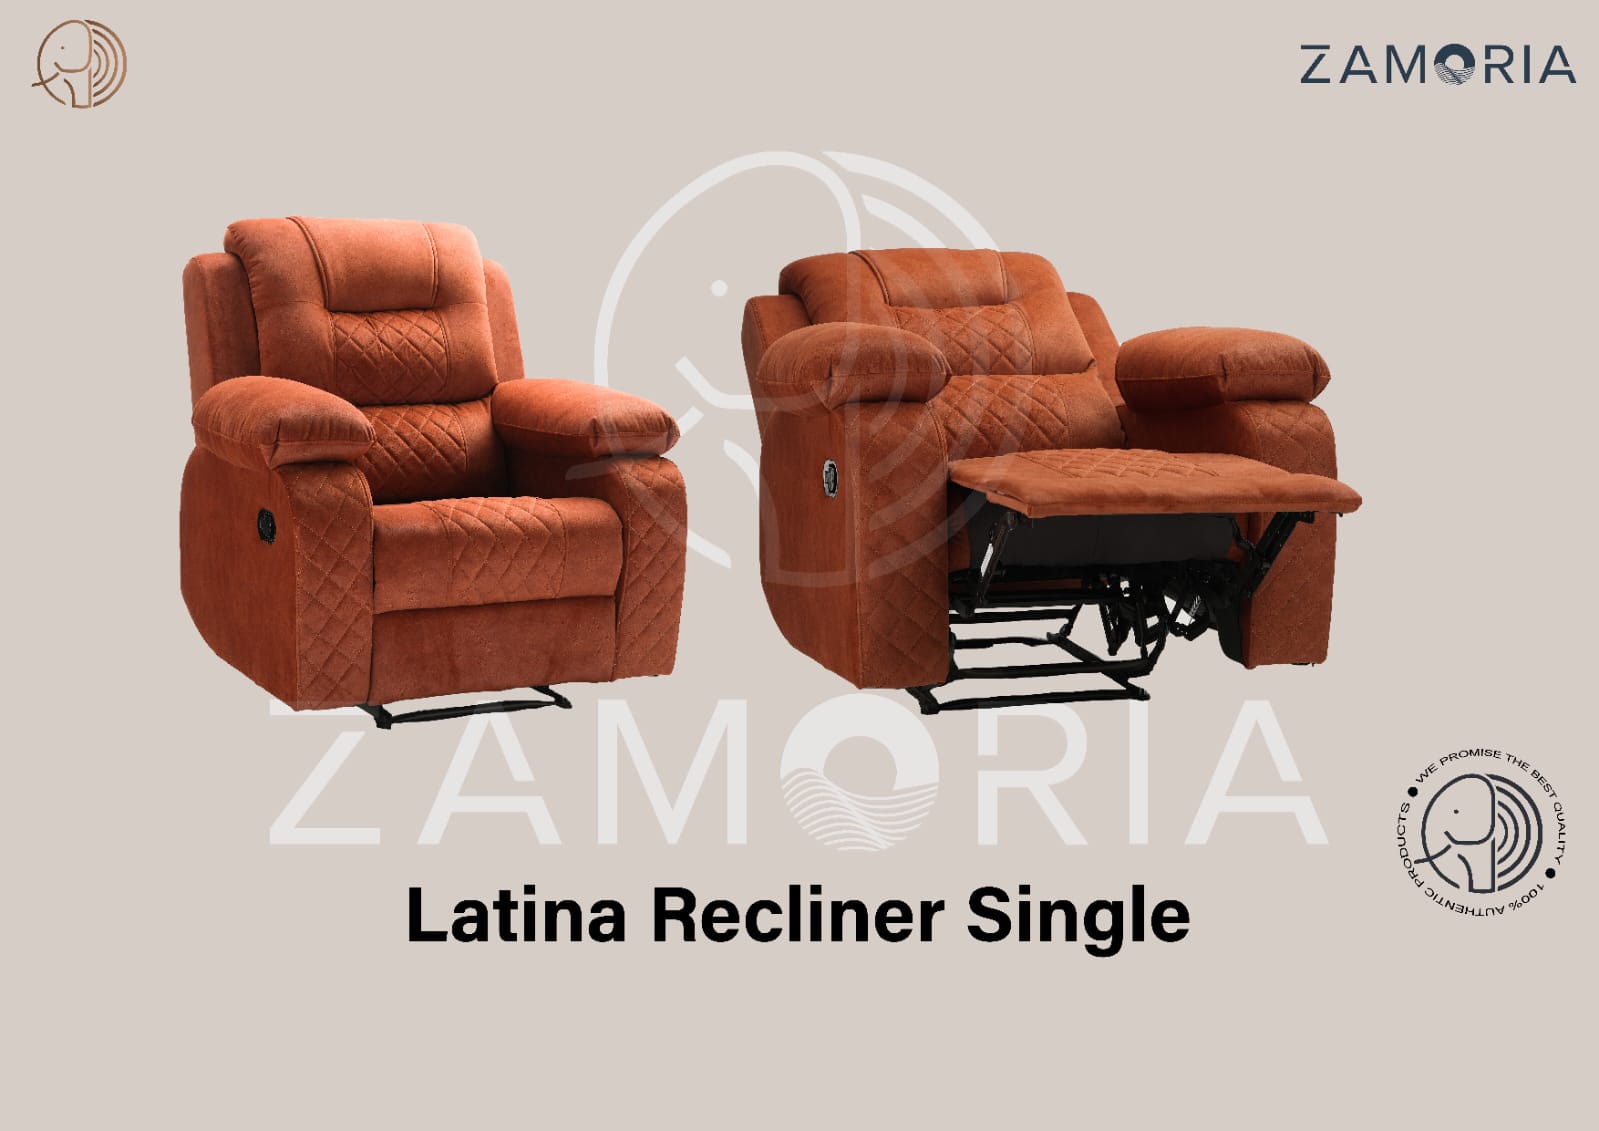 Latina Recliner Sofa